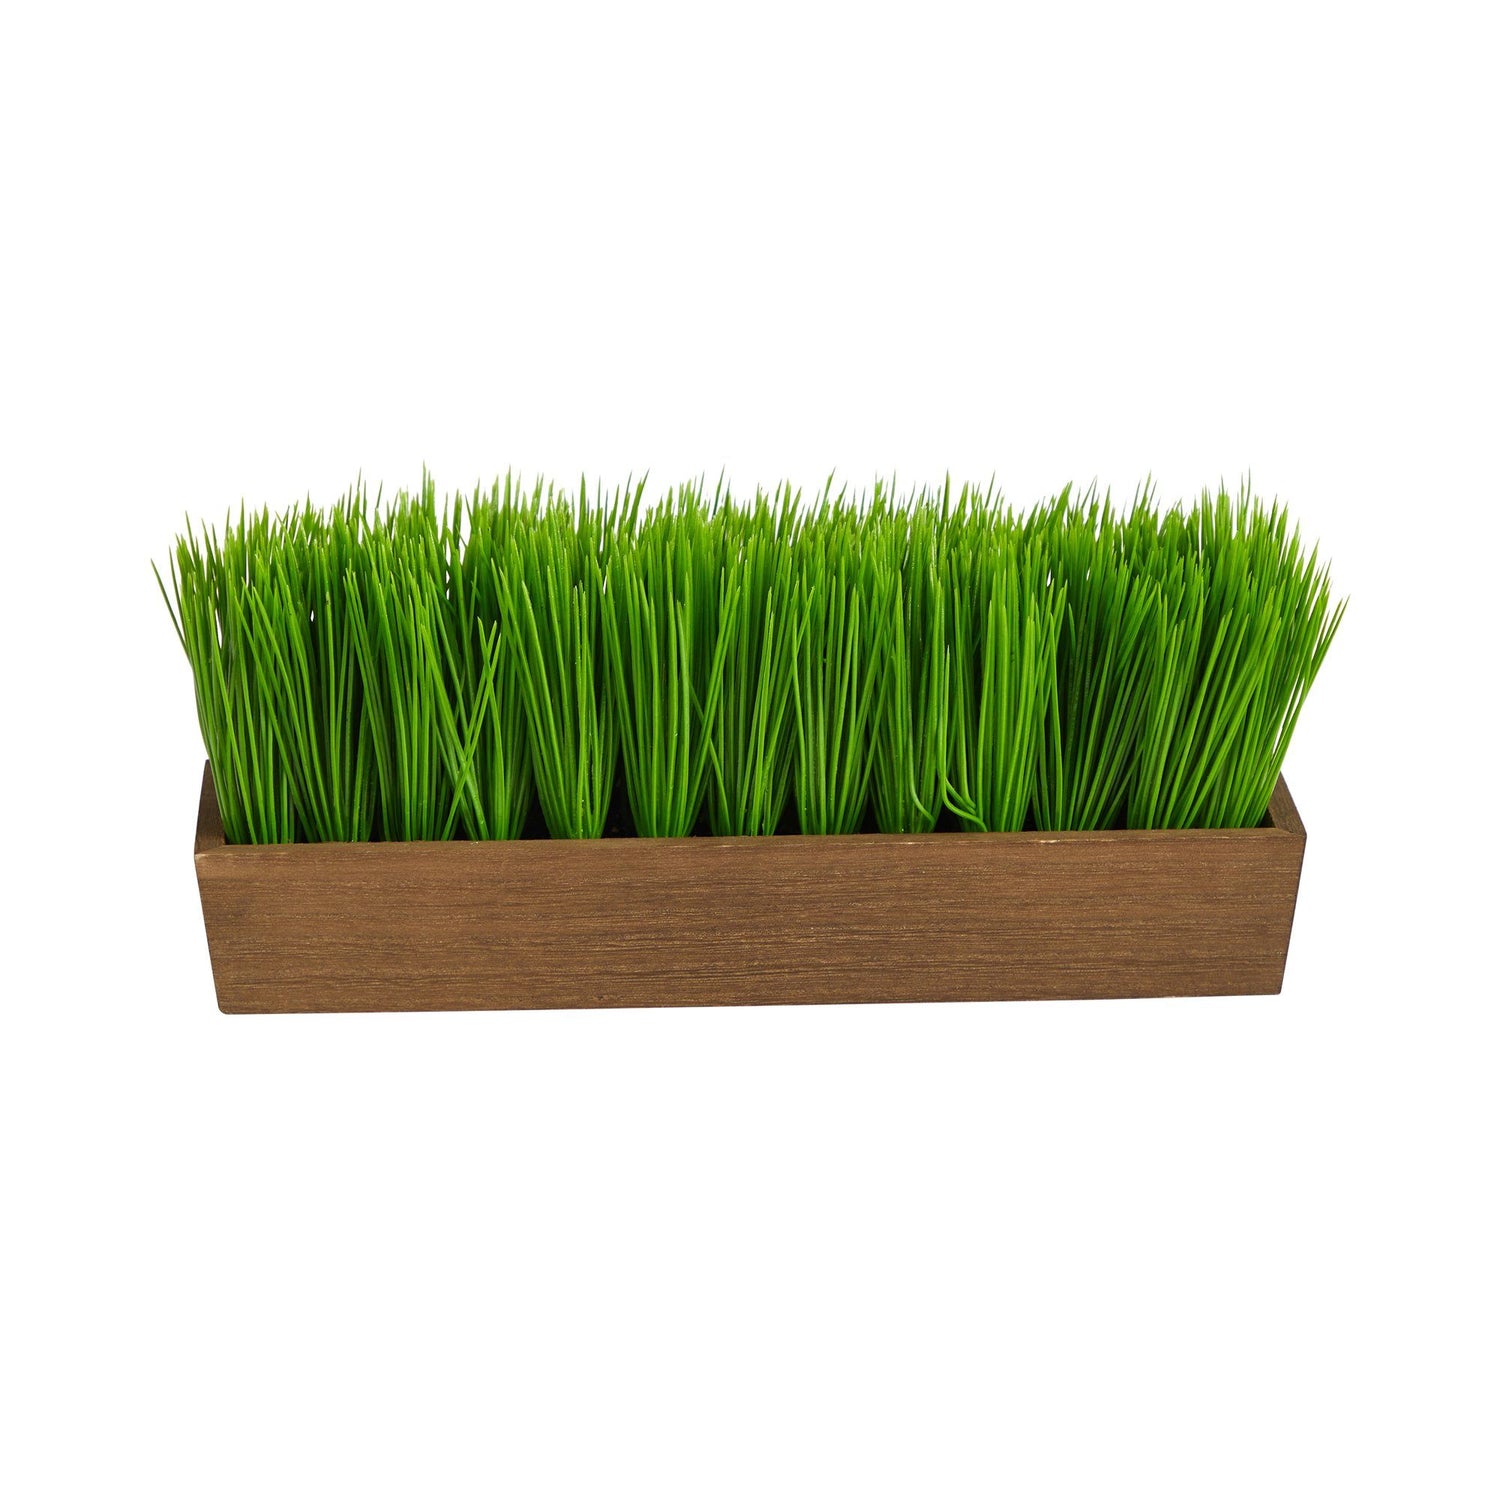 12” Grass Artificial Plant in Decorative Planter